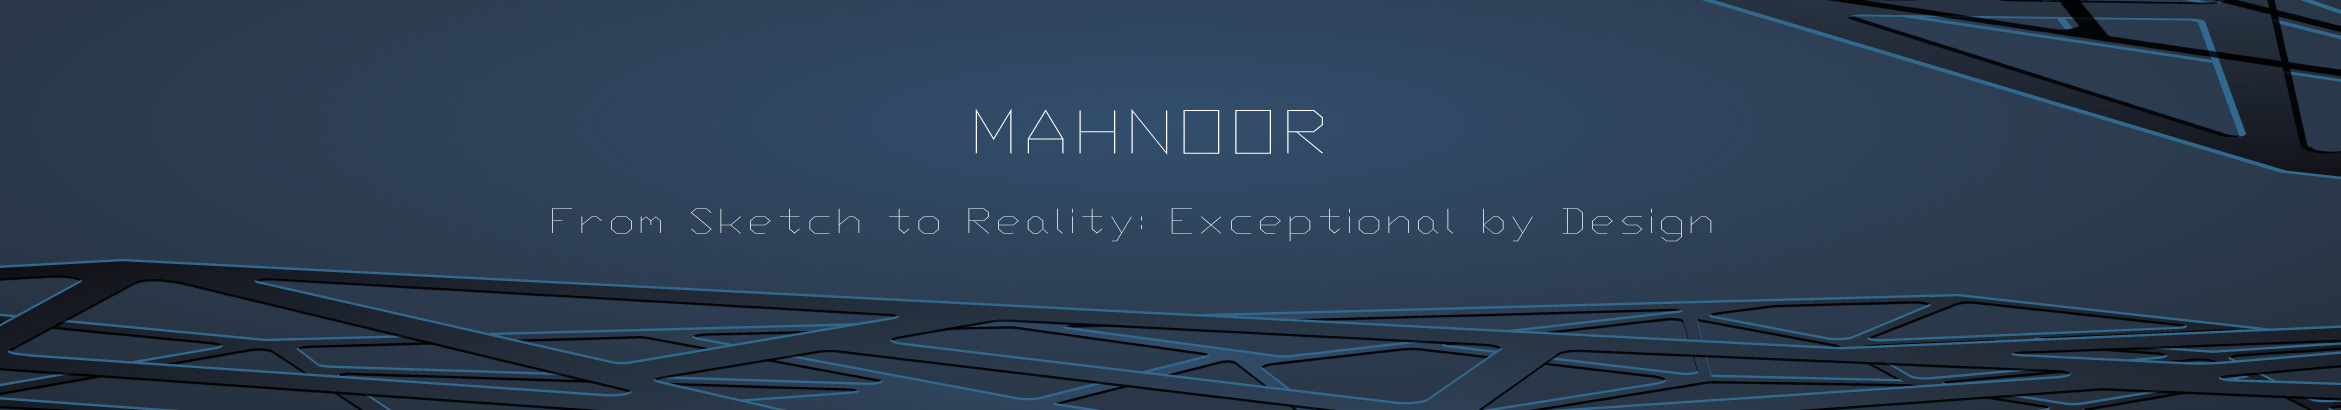 Mahnoor Asif's profile banner